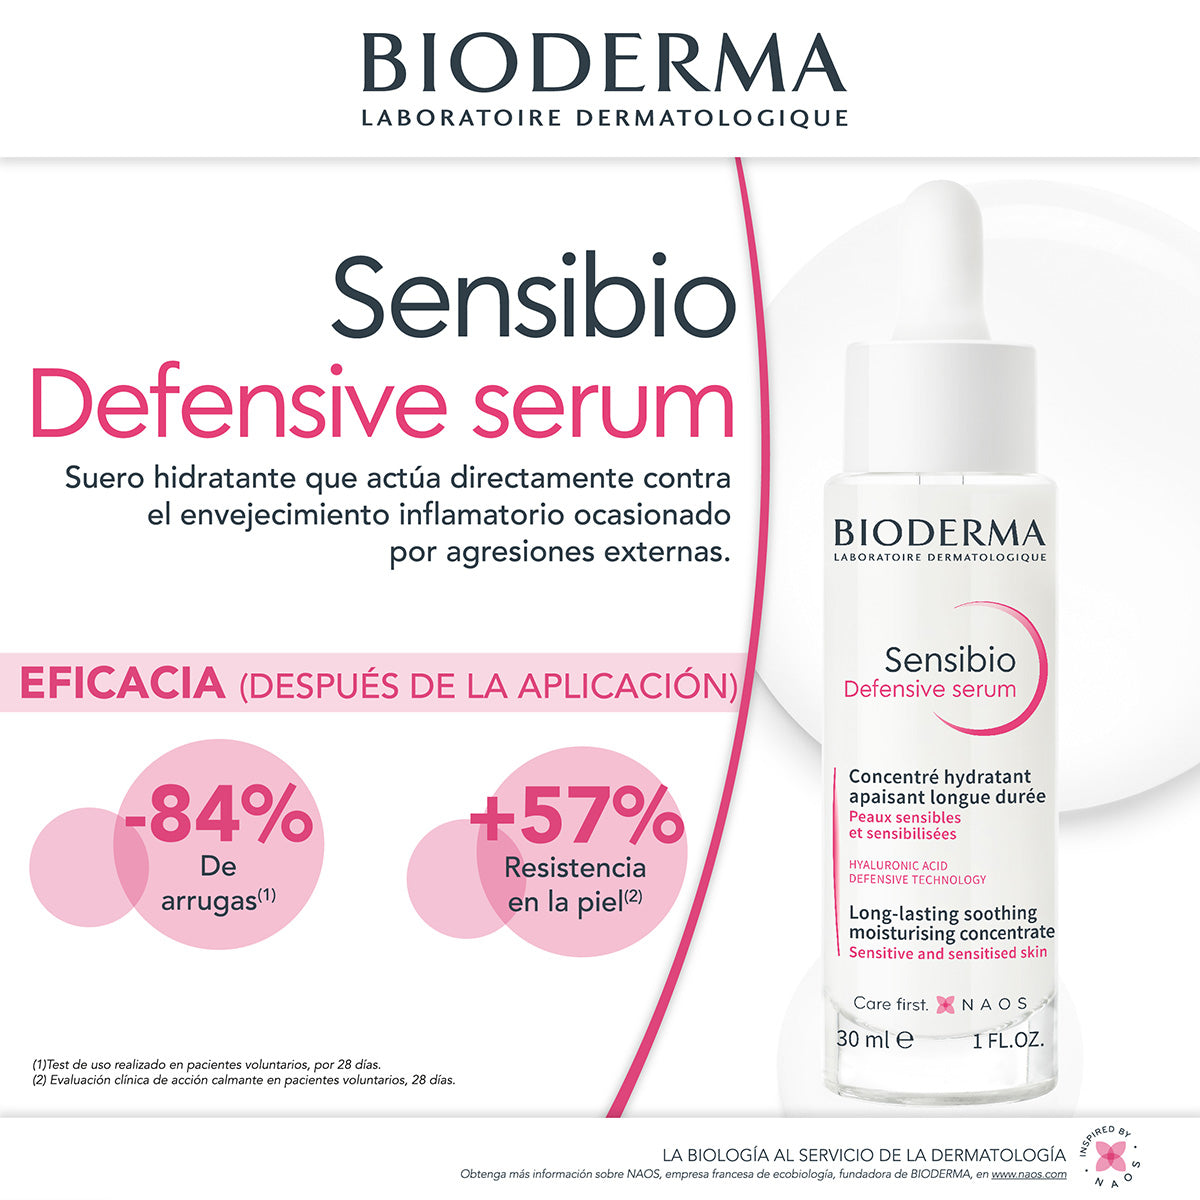 Bioderma Sensibio Defensive Serum, Suero hidratante contra el envejecimiento, 30ml